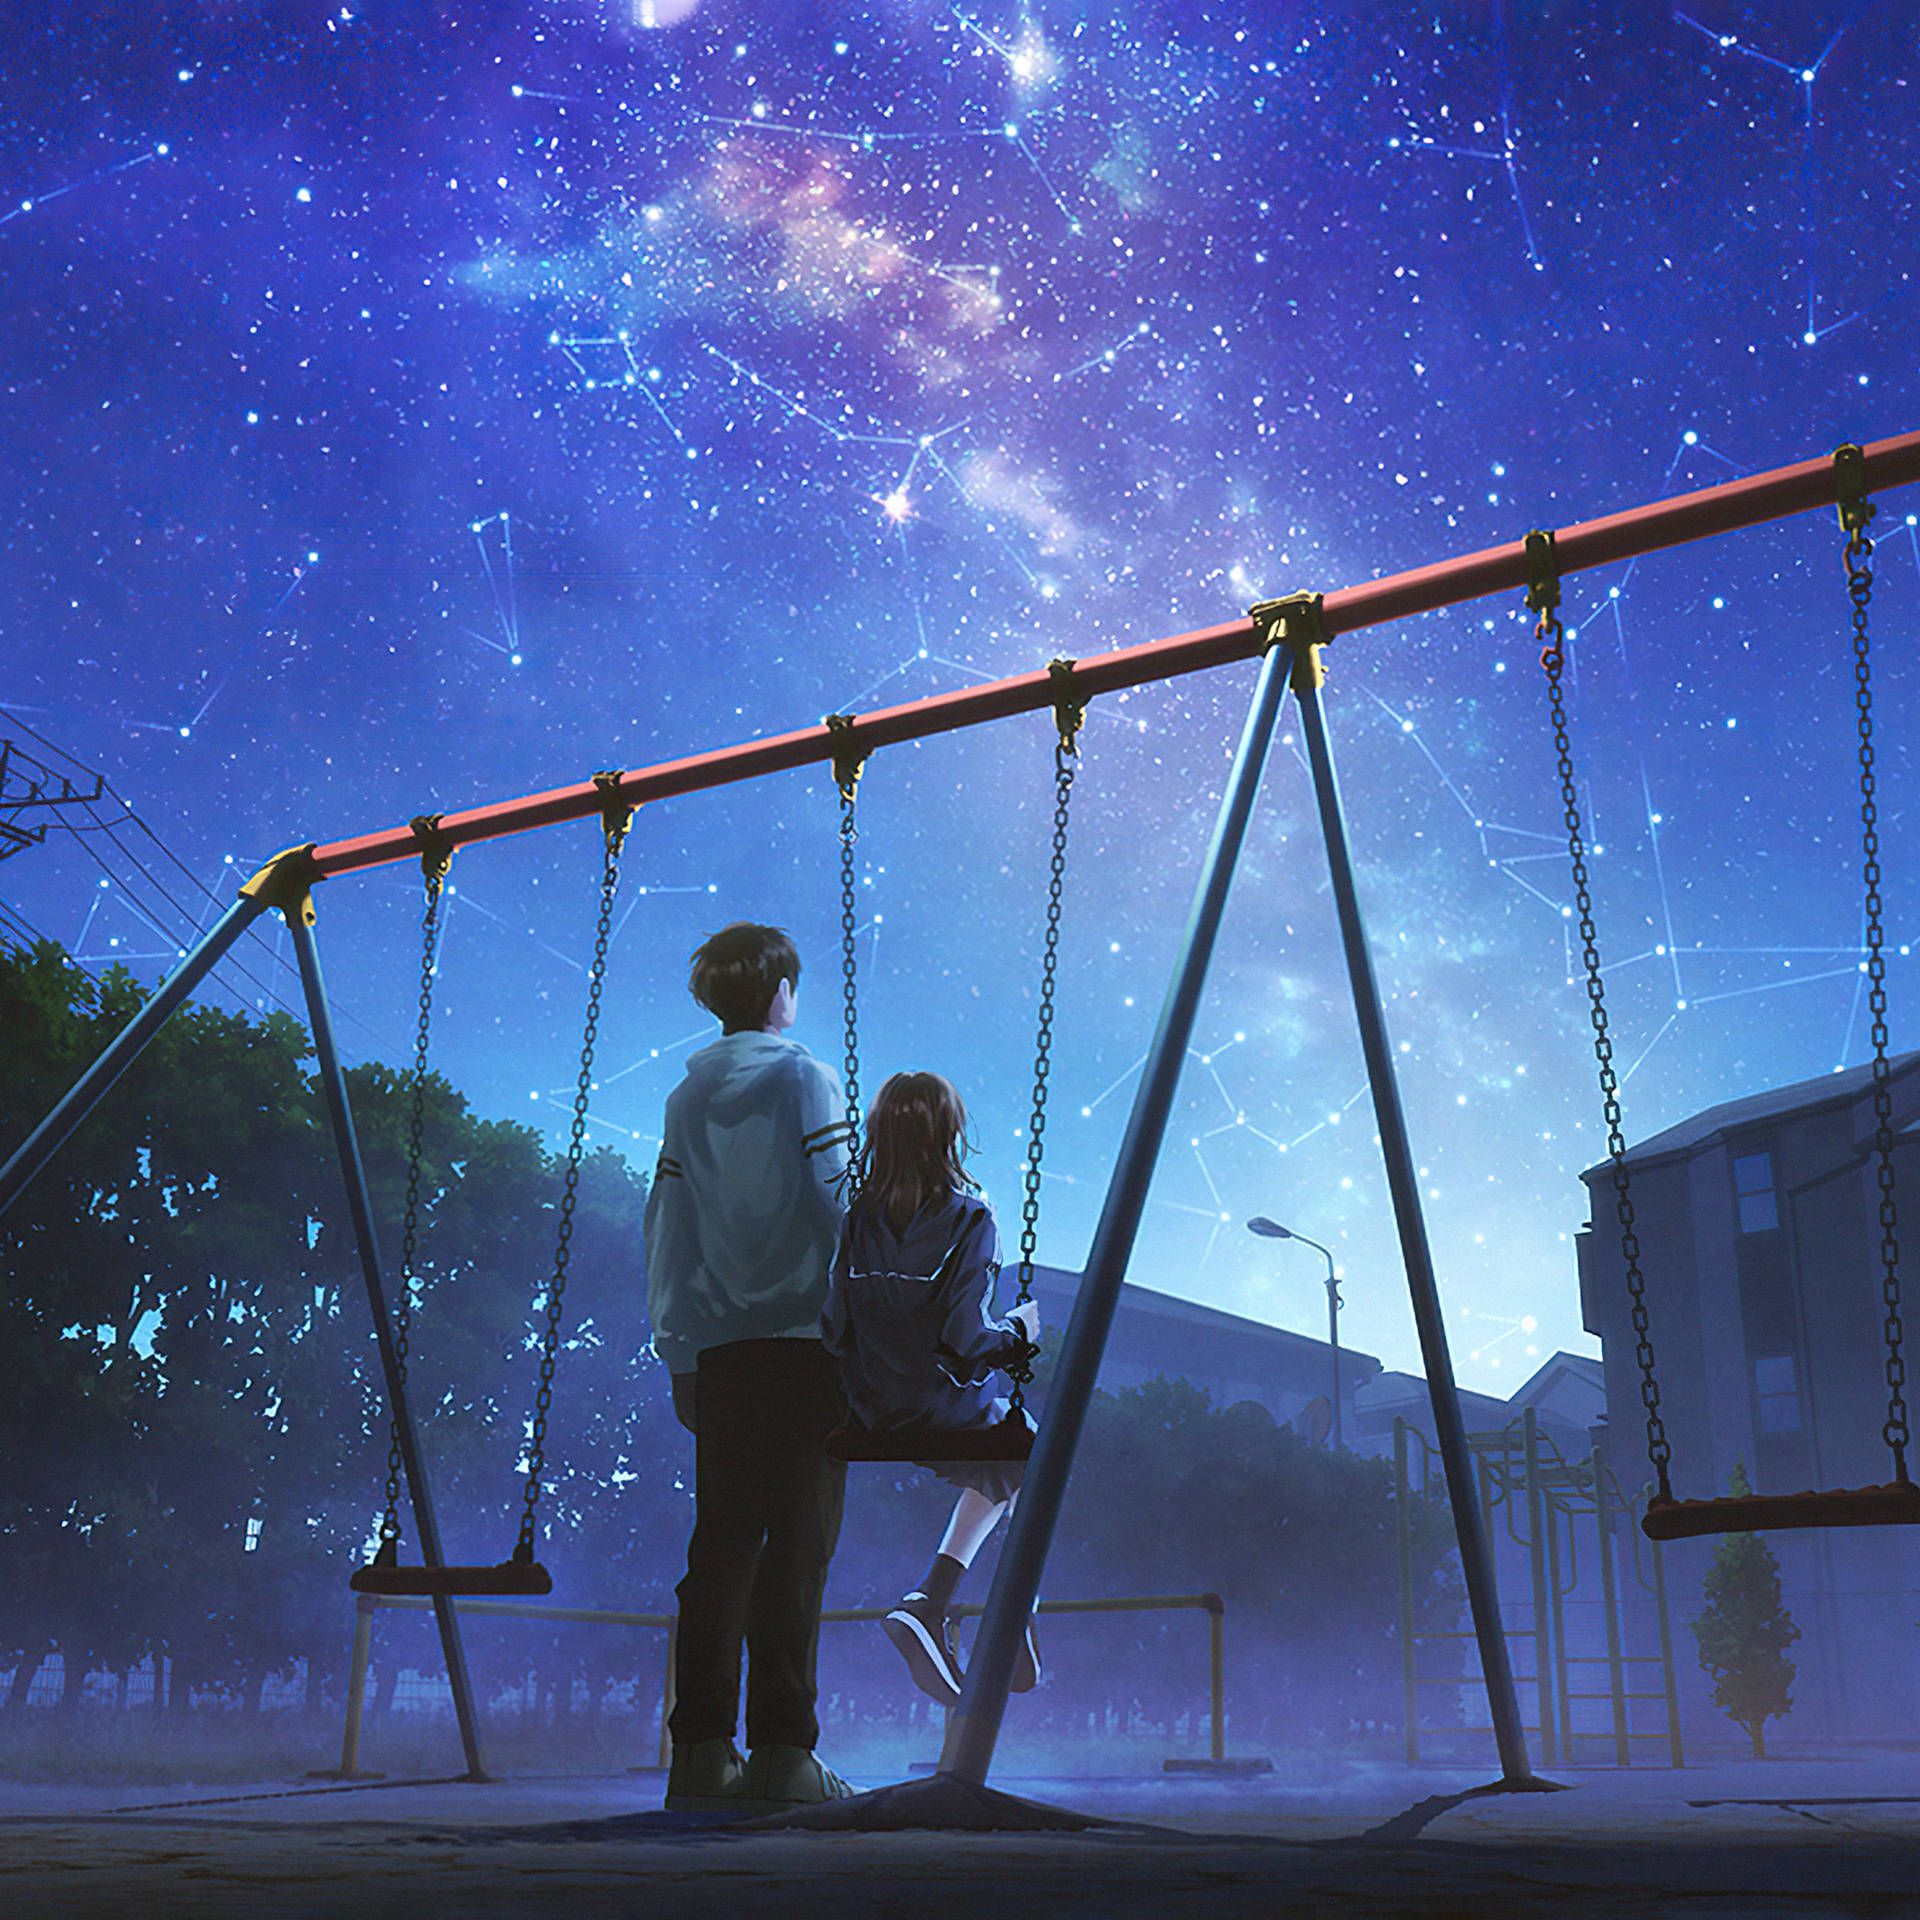 Anime IPad Swings Under Starry Sky Wallpaper